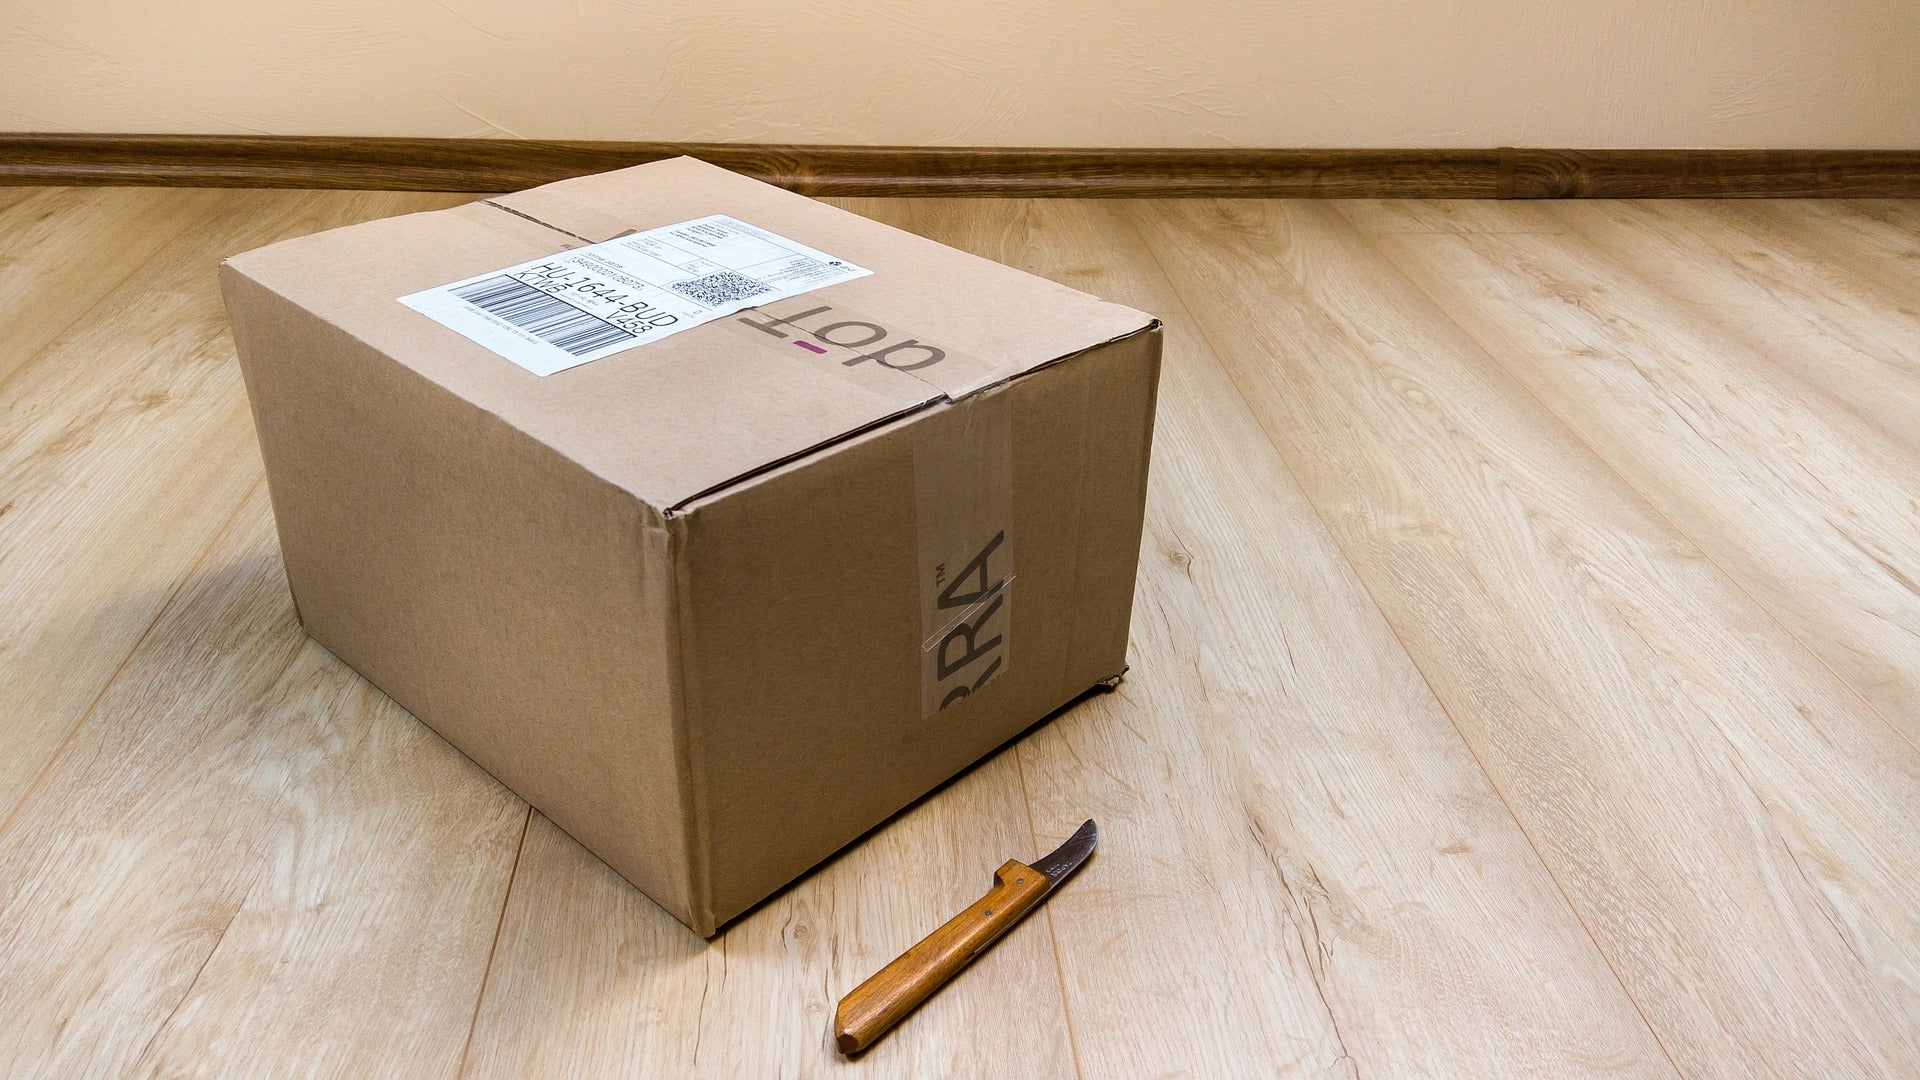 Blick auf ein gepacktes Paket, das neben einem Cutter auf einem Holzboden steht. Mit einem guten Retourenmanagement sorgst du für zufriedene Kund:innen und optimierst deinen Onlineshop-Versand!